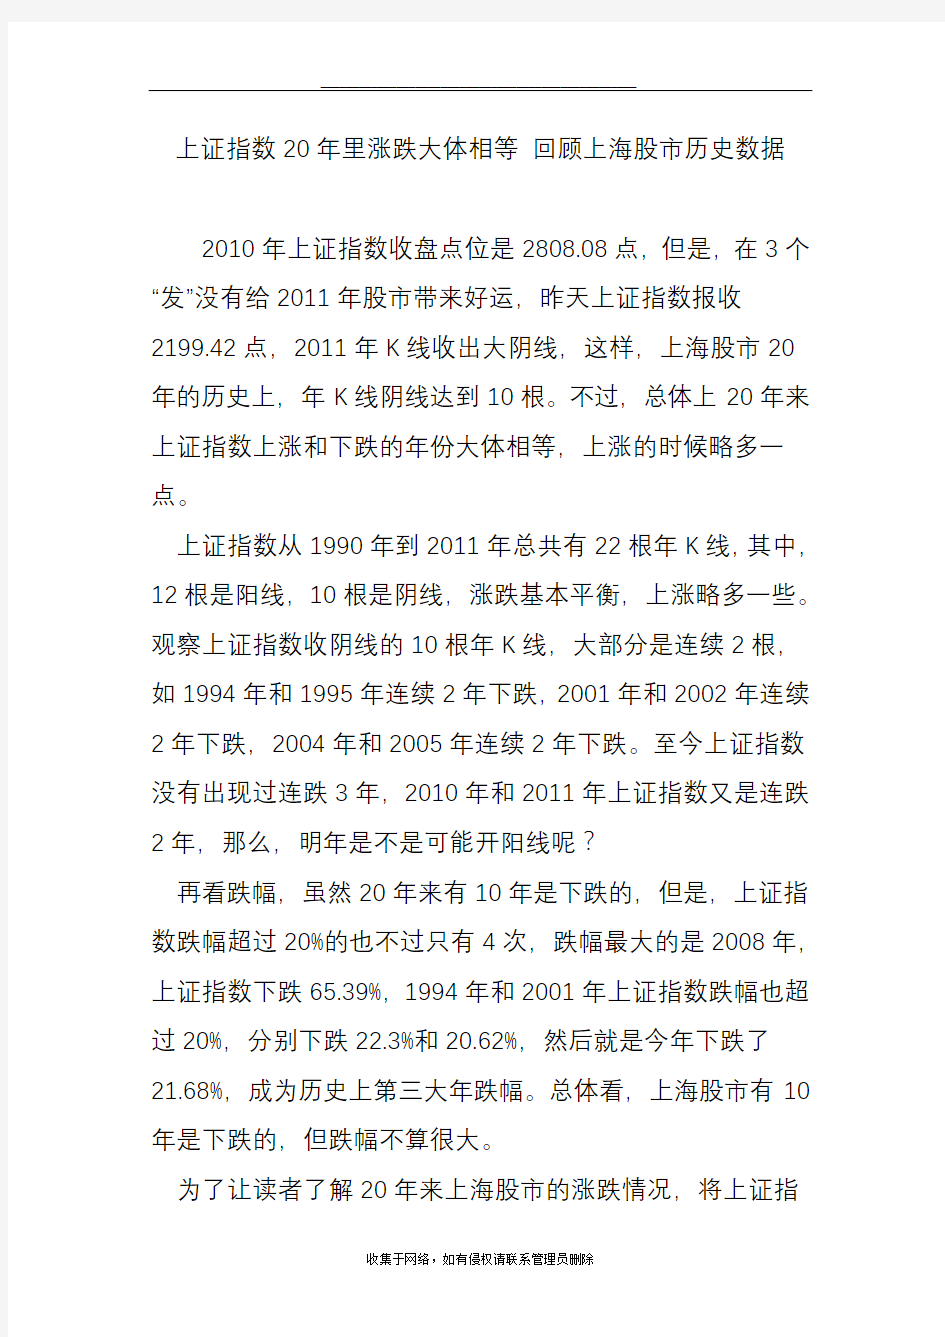 最新上证指数20年里涨跌大体相等 回顾上海股市历史数据